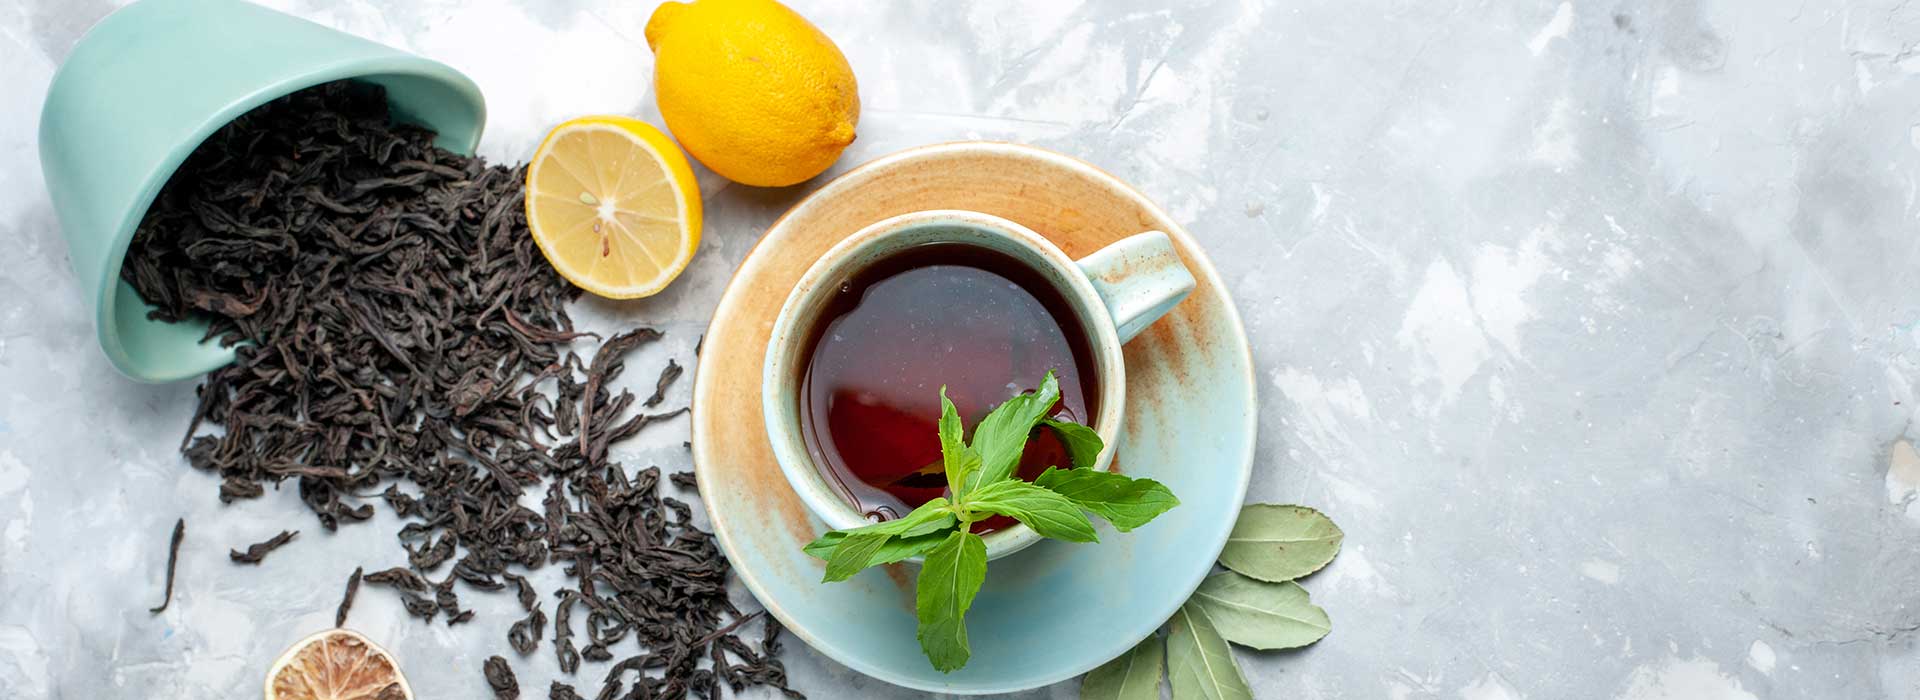 انواع چای اصیل و دمنوش های شمال